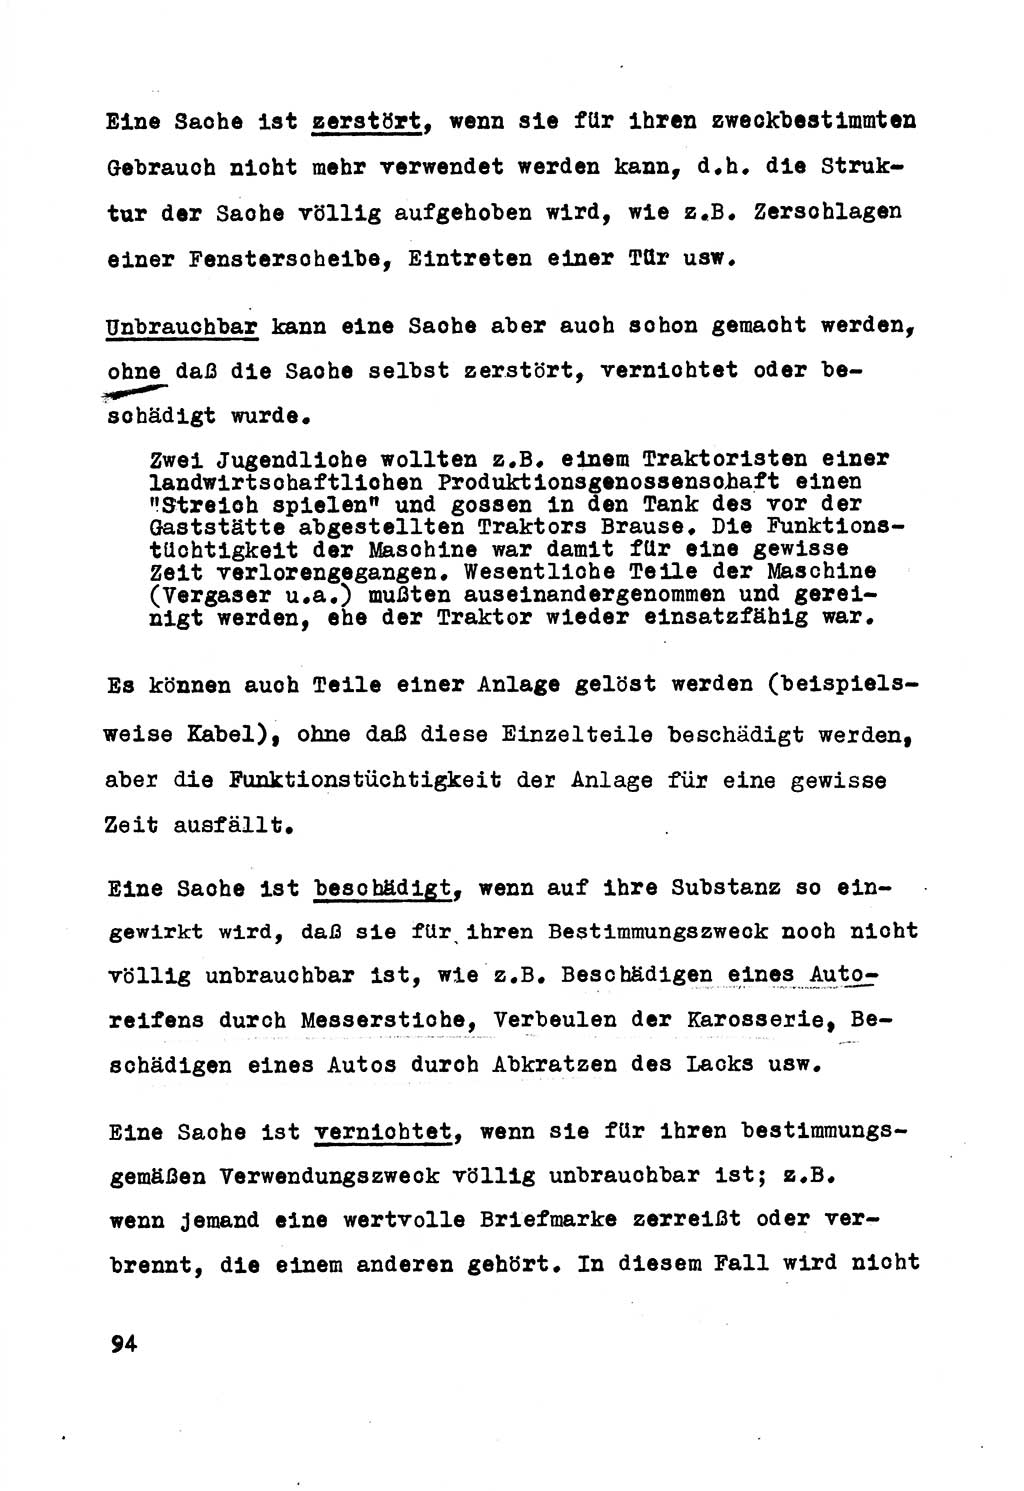 Strafrecht der DDR (Deutsche Demokratische Republik), Besonderer Teil, Lehrmaterial, Heft 5 1970, Seite 94 (Strafr. DDR BT Lehrmat. H. 5 1970, S. 94)